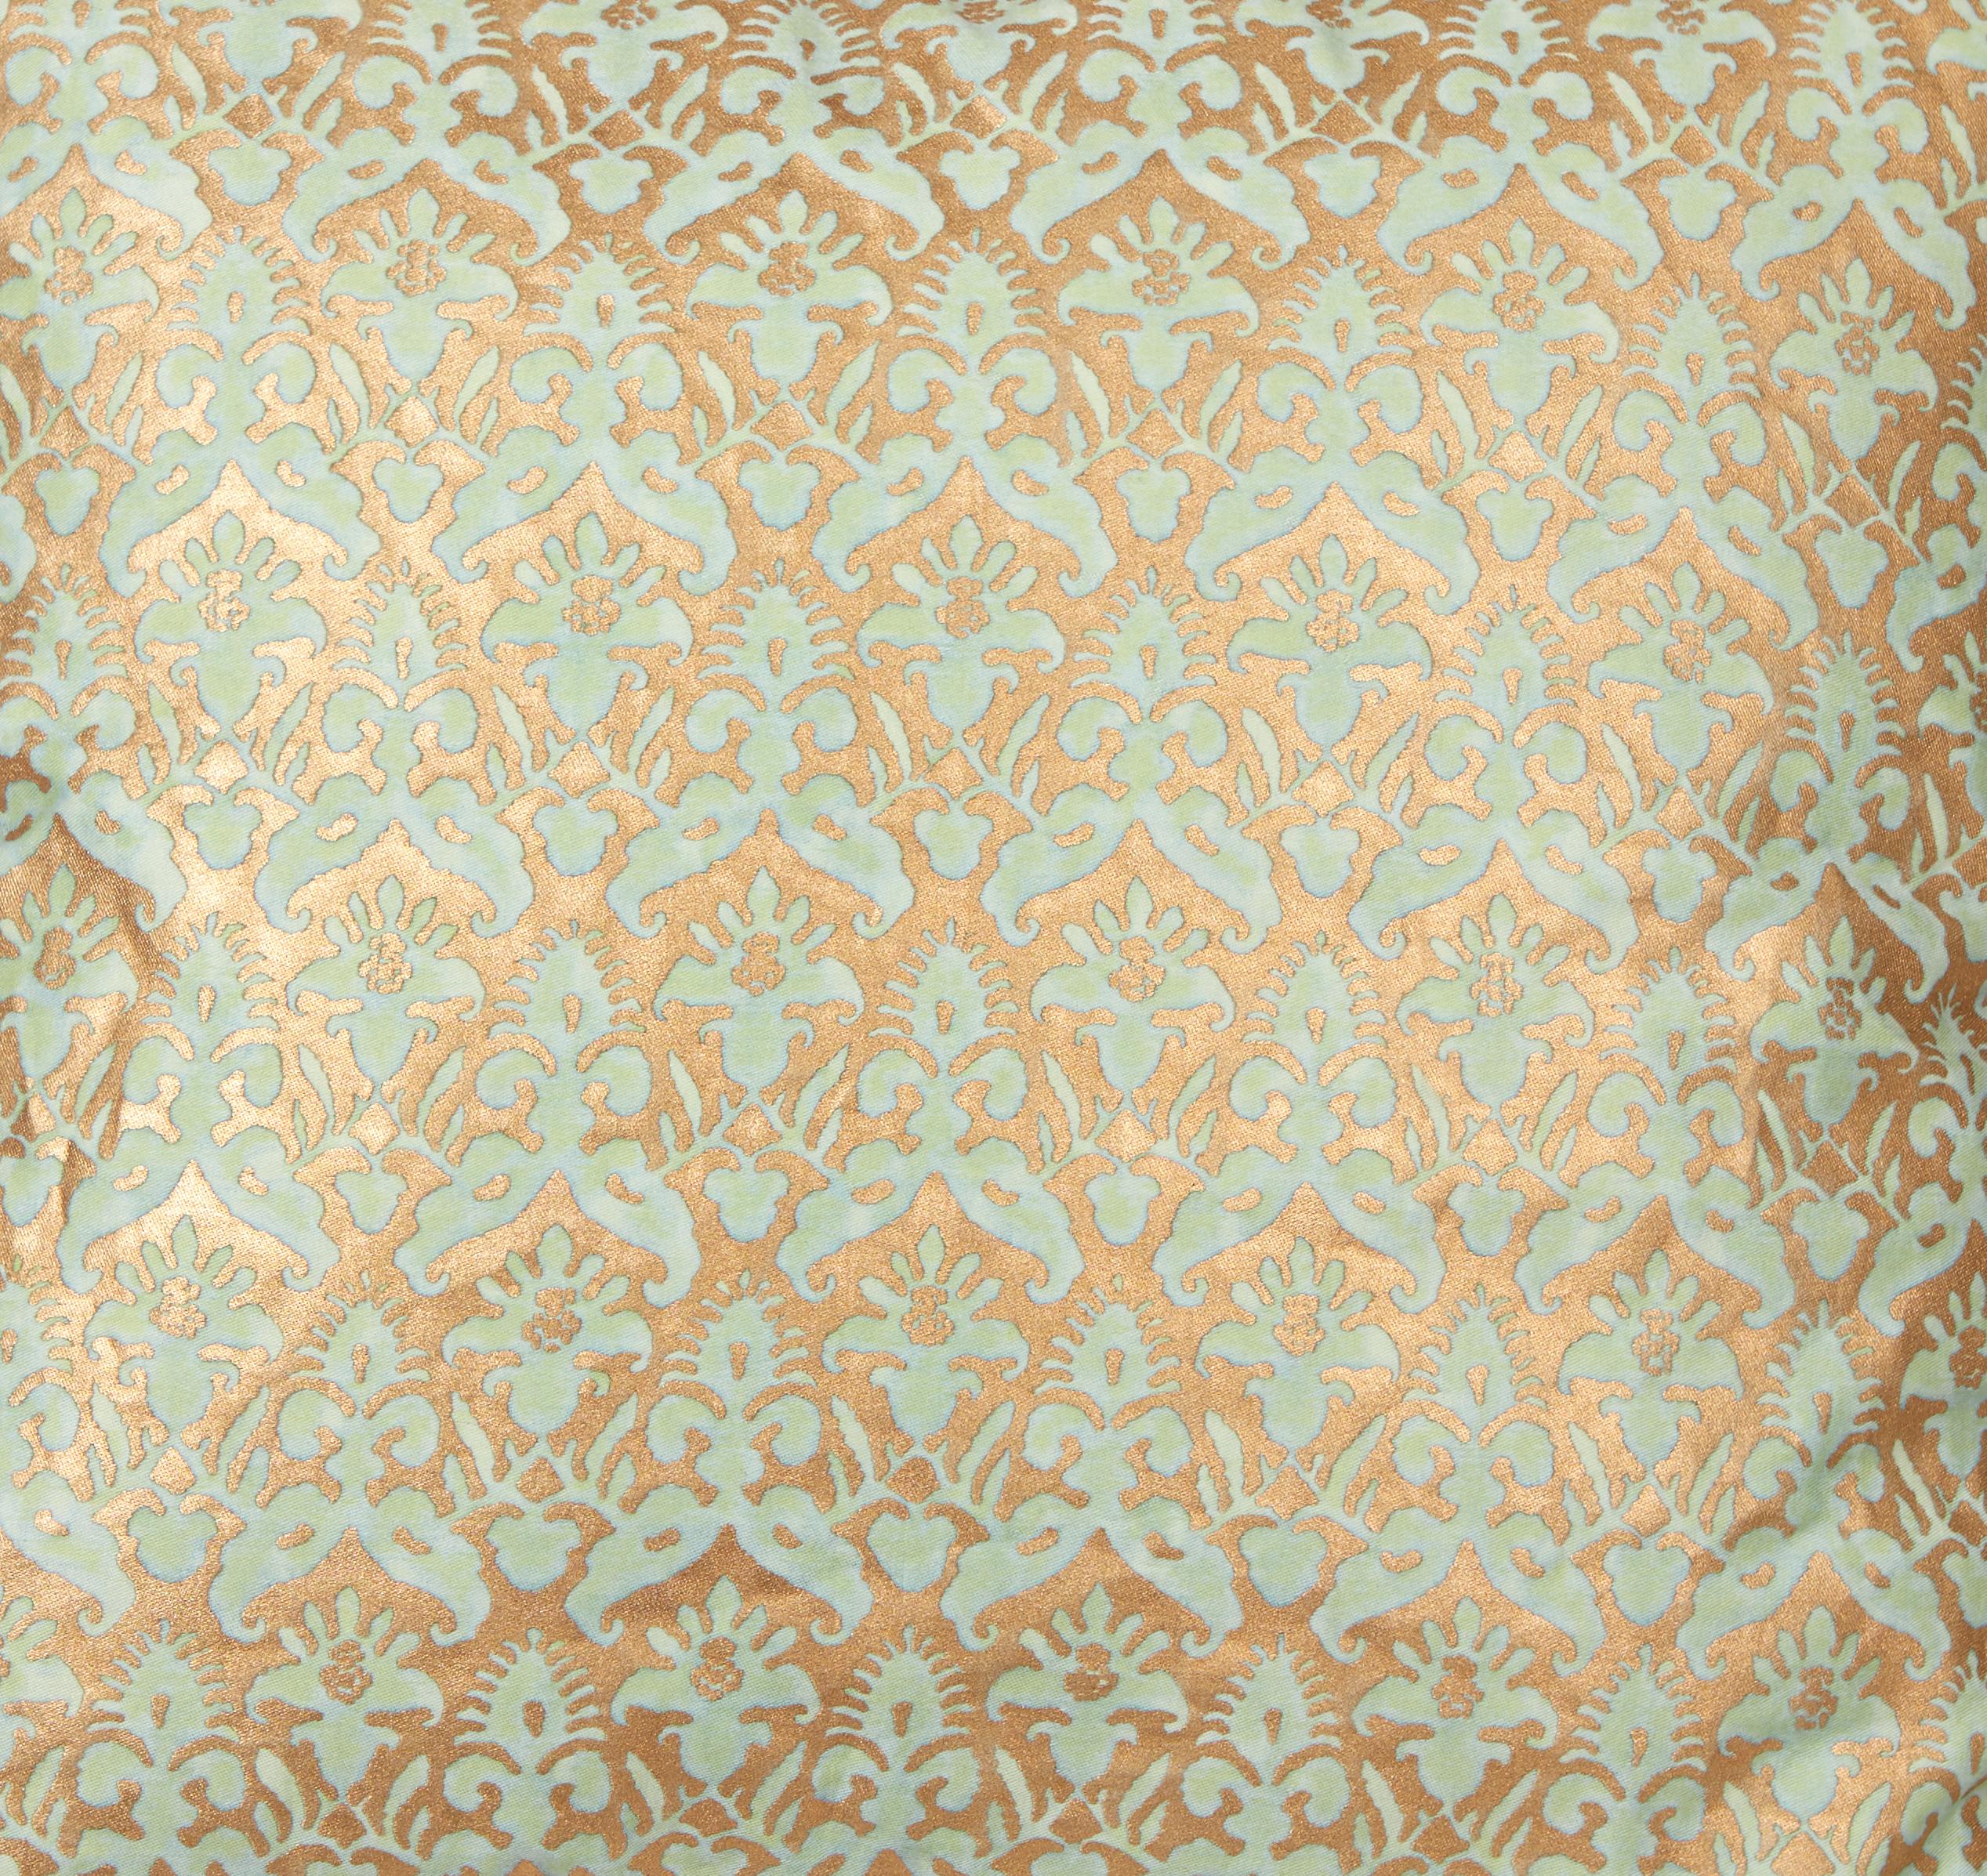 Paire de coussins en tissu Fortuny à motif Delfino, de couleur aigue-marine et or, avec bordure en biais de soie. Le motif, un dessin français du XVIIe siècle, est de style Louis XIII. Nouvellement confectionné avec du tissu Fortuny vintage. insert